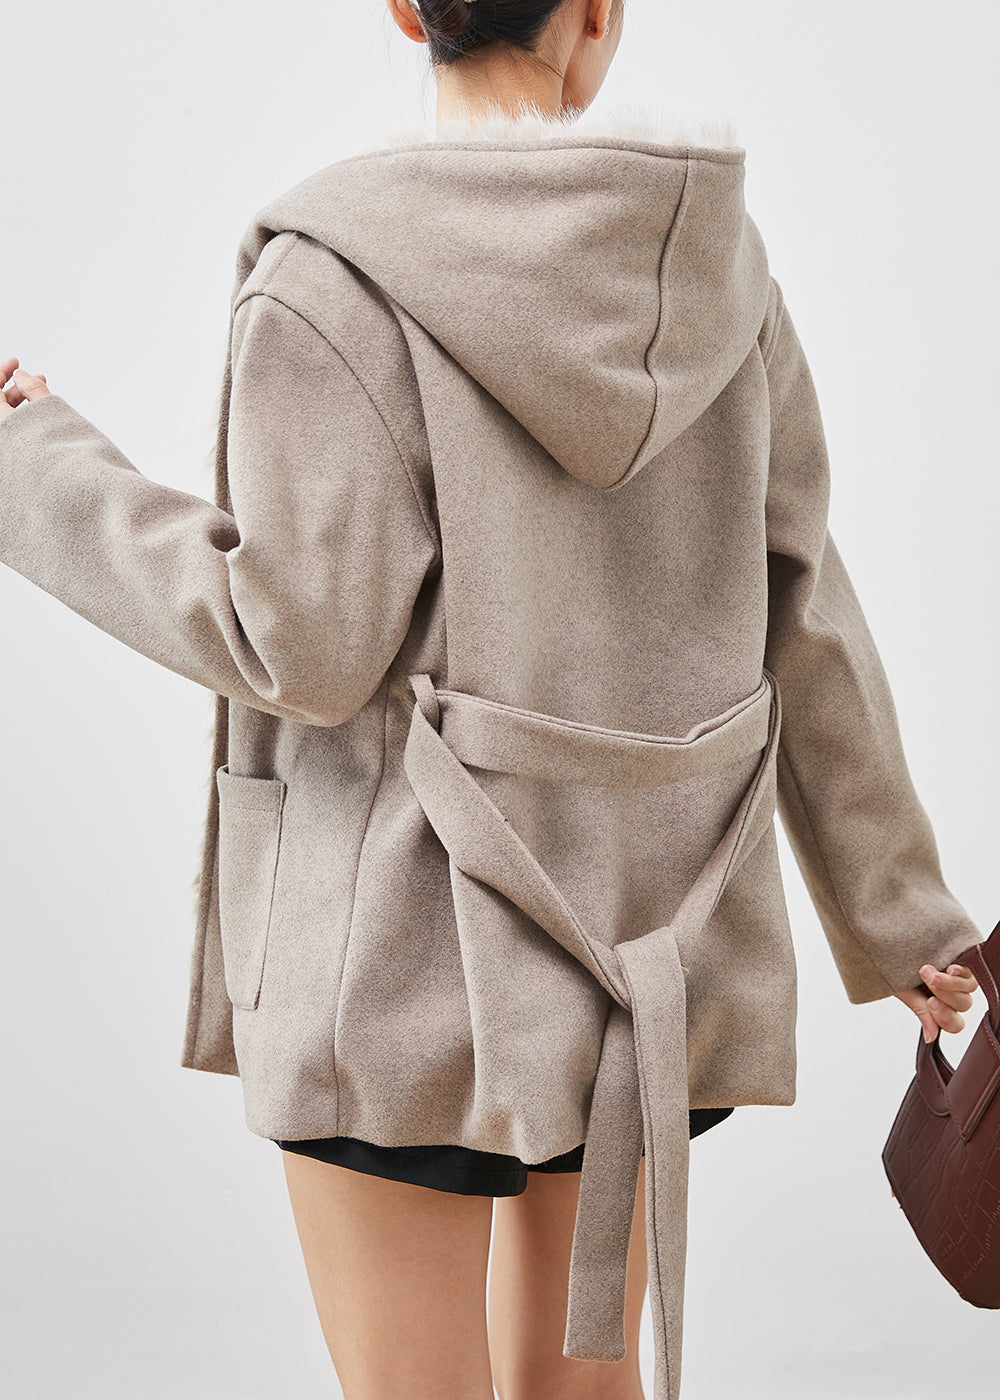 Simple Khaki Hooded Pockets Woolen Coat Fuzzy Fox Lined Winter